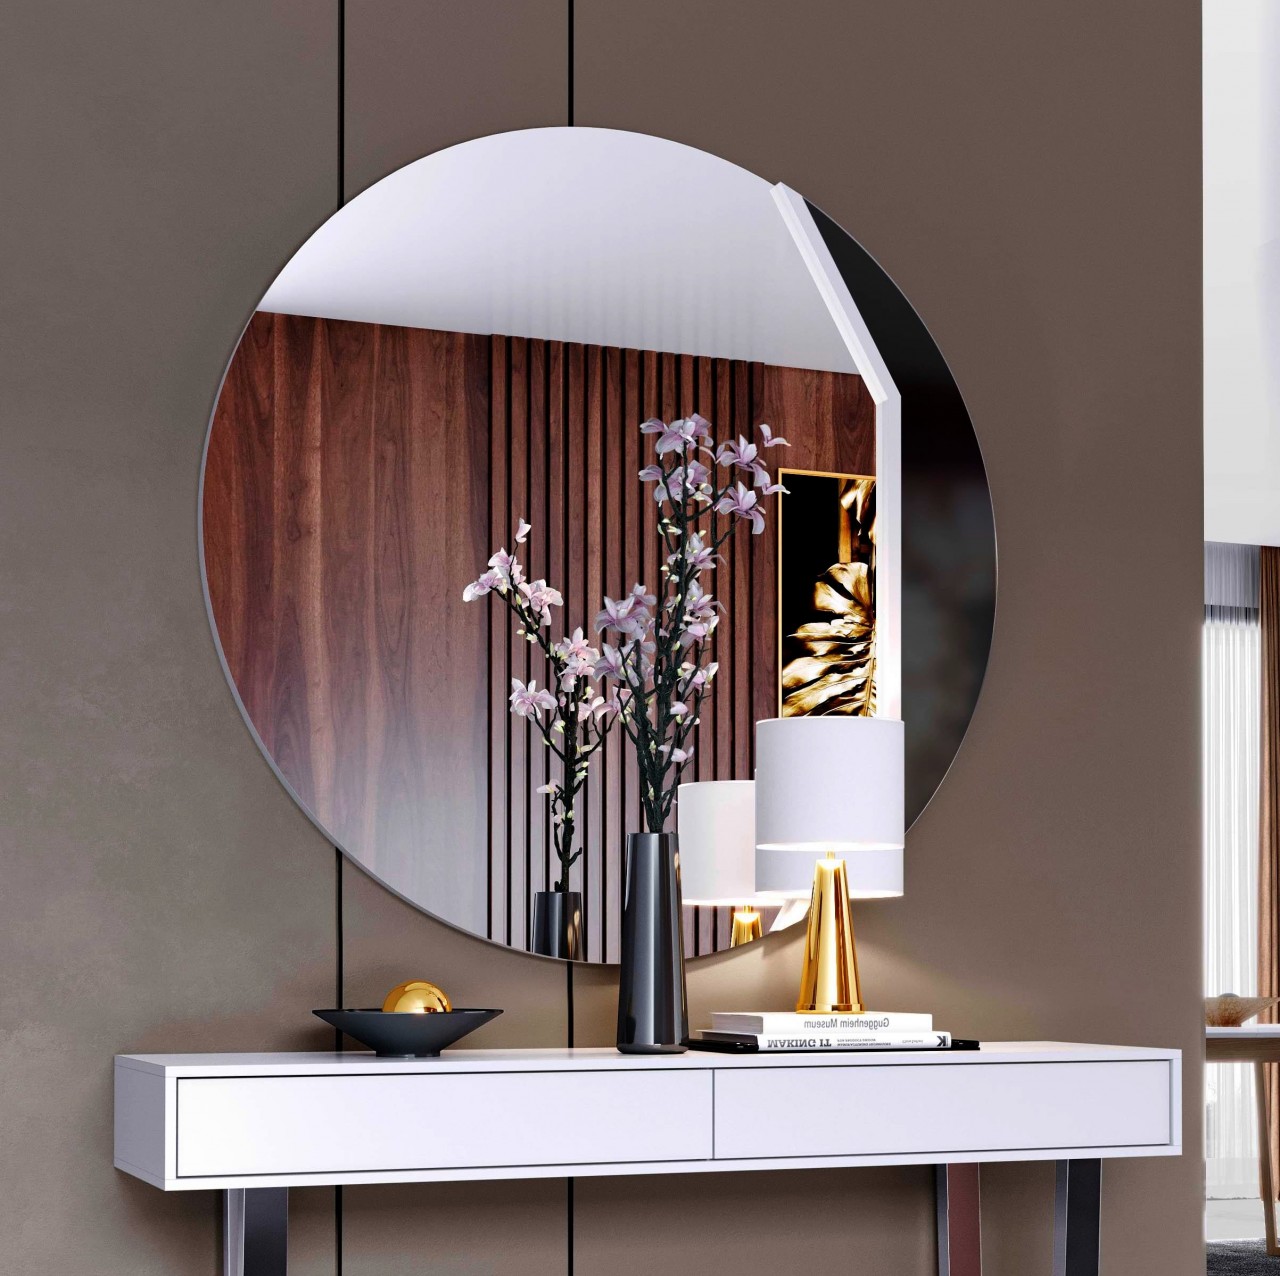 O espelho luca Simple é a consola ideal para qualquer espaço moderno. Com design refinado e elegante, ele agrega sofisticação e conforto à decoração.